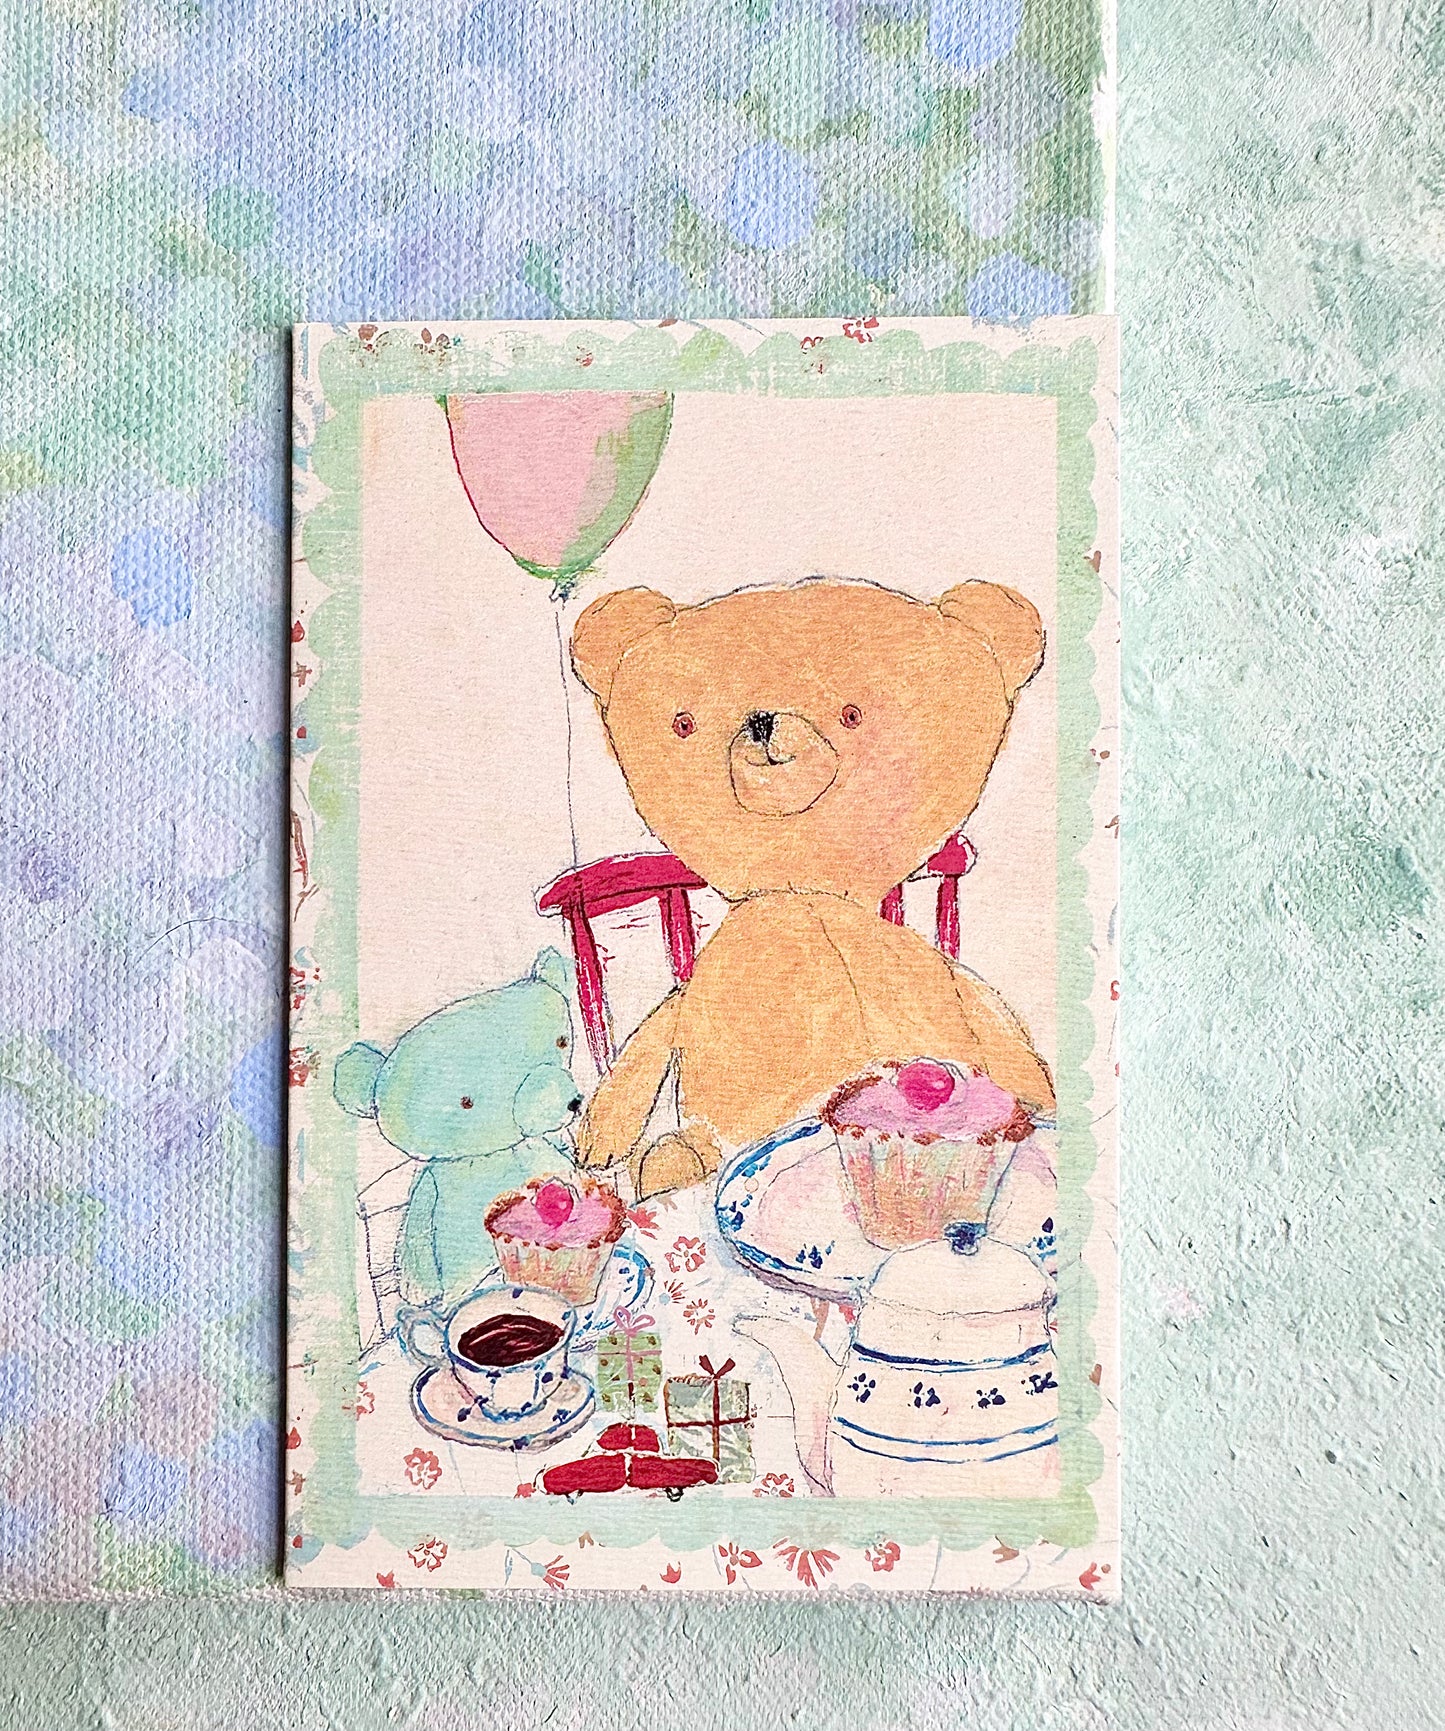 Small Double Card “Birthday Teddy” - 2007